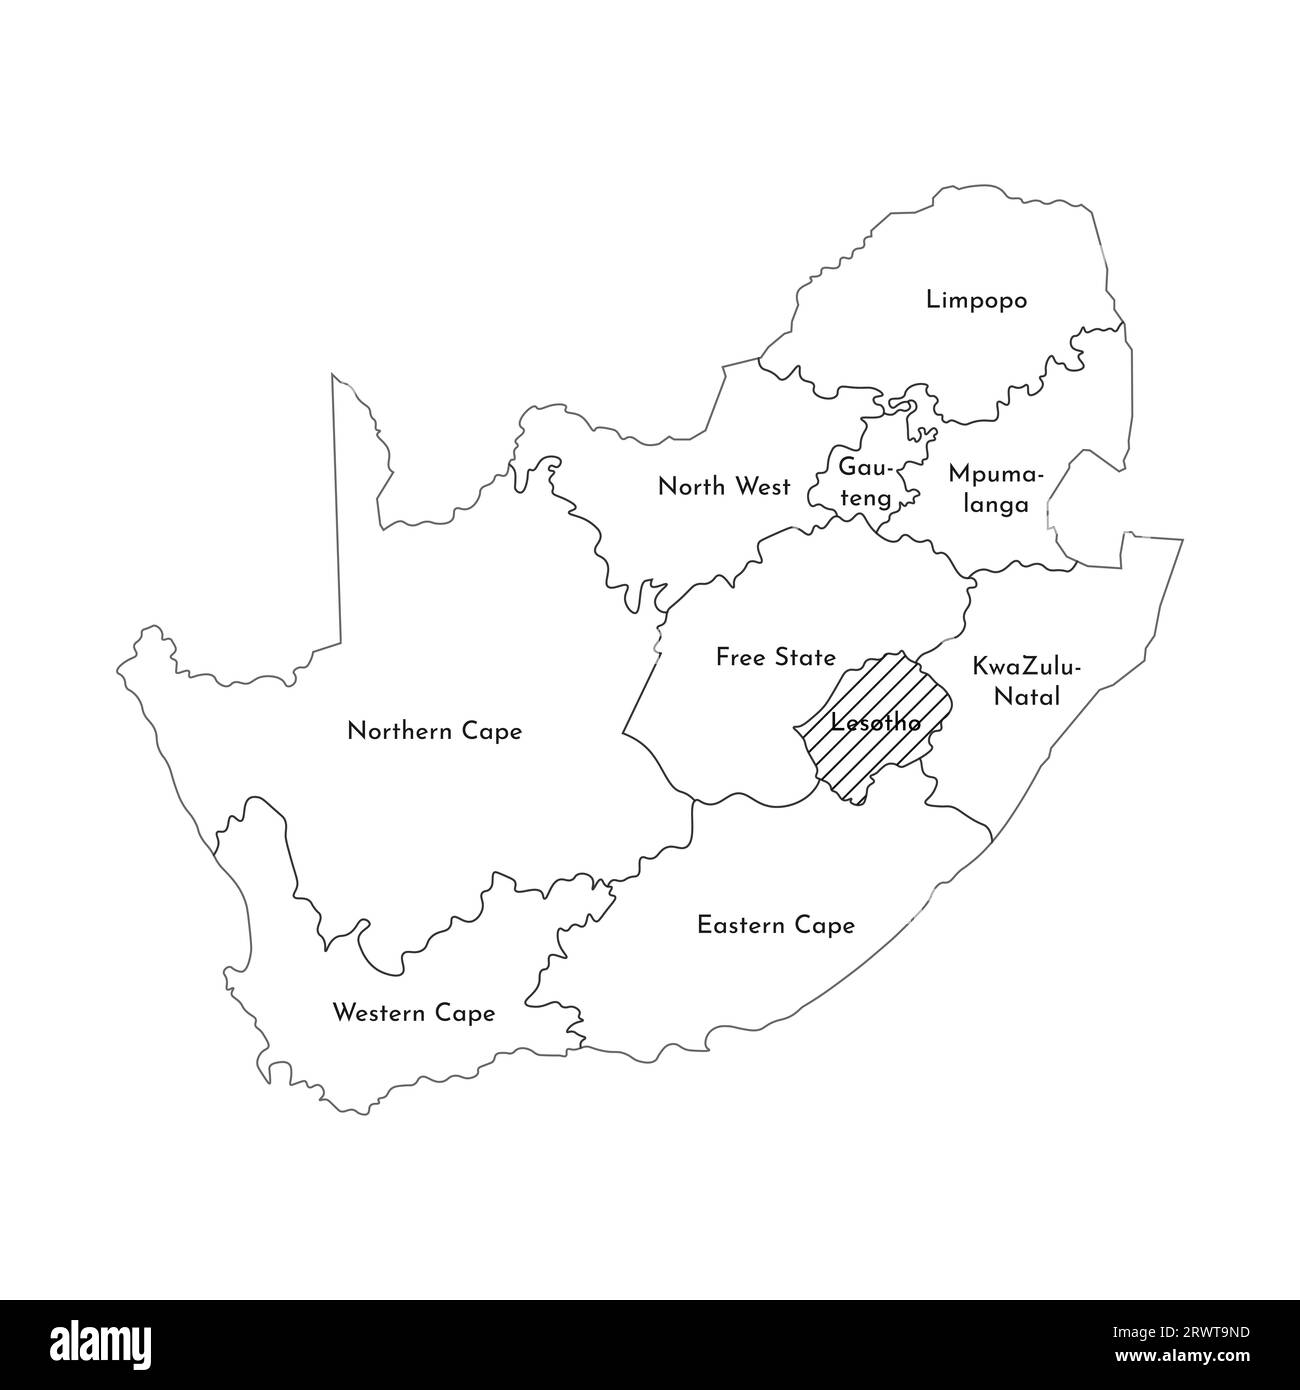 Illustrazione vettoriale isolata della mappa amministrativa semplificata del Sudafrica. Confini e nomi delle regioni. Silhouette nere. Illustrazione Vettoriale